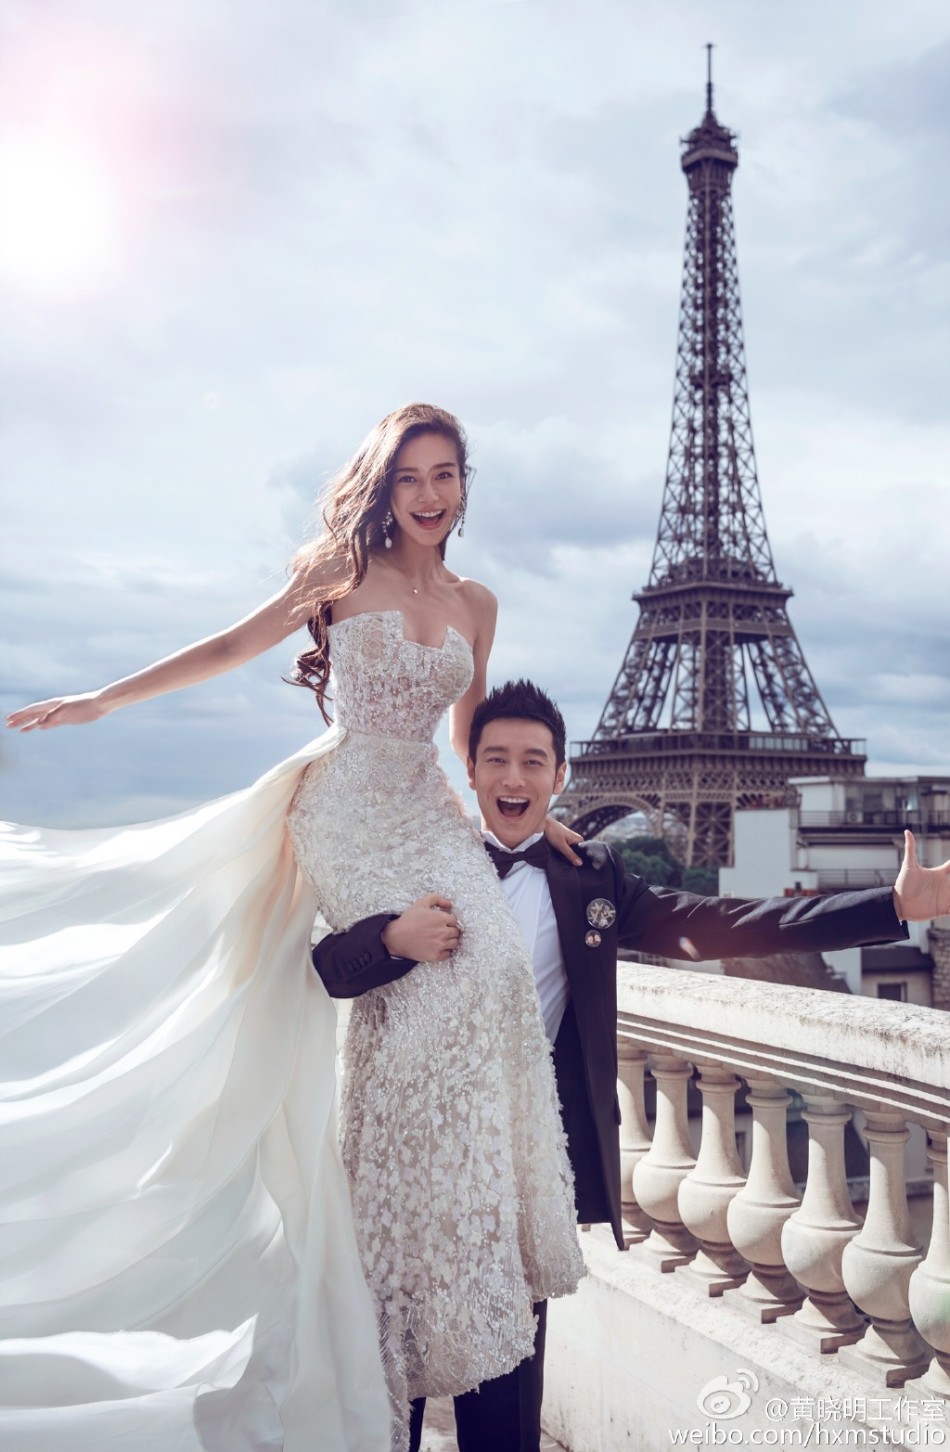 AngelaBaby và Huỳnh Hiểu Minh là một trong những cặp đôi nổi tiếng nhất ở Trung Quốc. Điều đó không có gì ngạc nhiên khi nhìn vào bộ ảnh cưới đẹp như mơ của họ. Hãy xem để cảm nhận sự lãng mạn và sang trọng pha trộn trong bộ ảnh này.